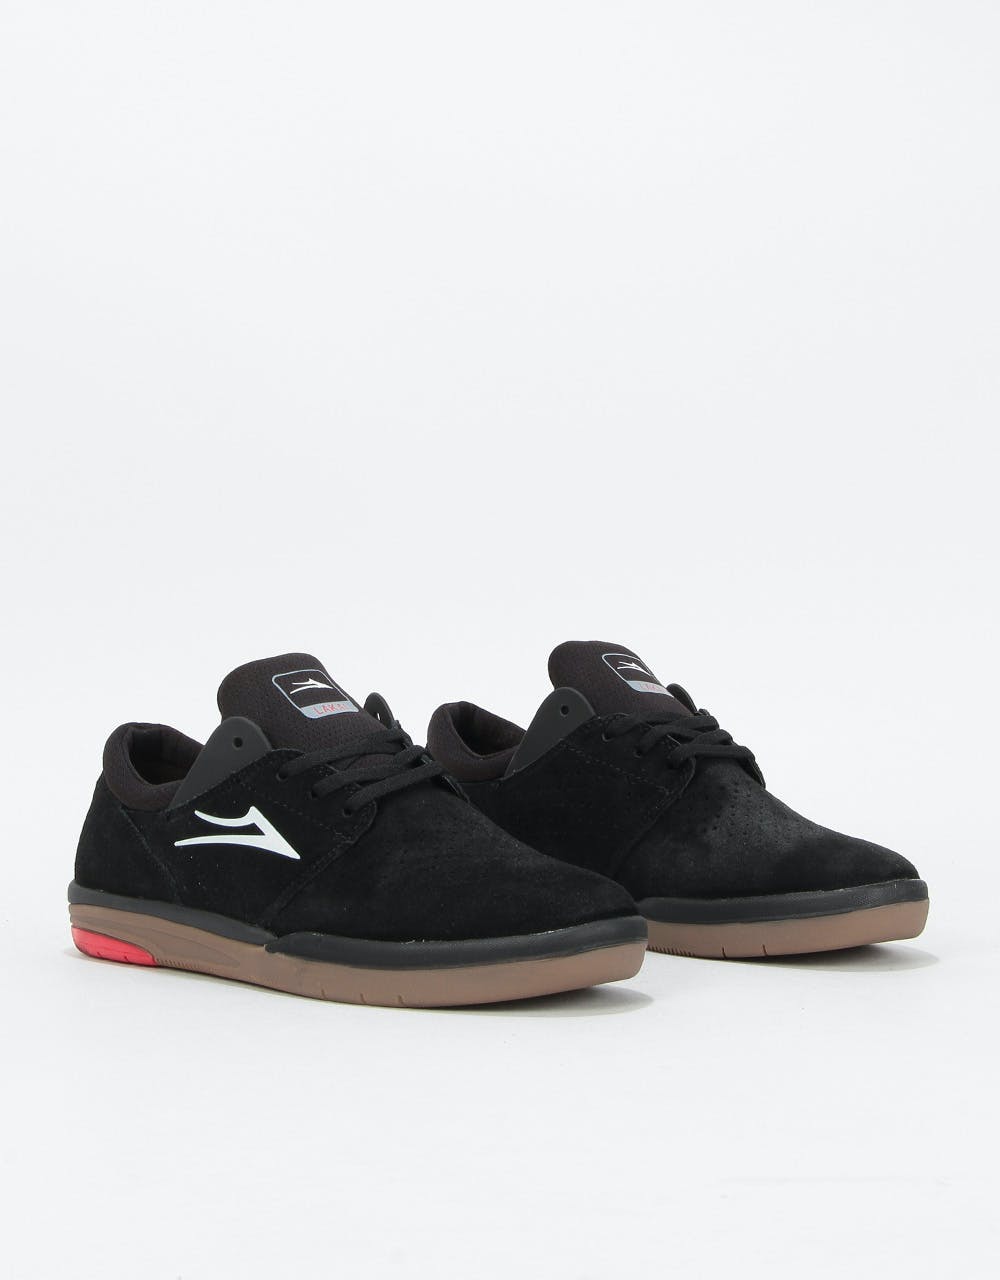 Lakai Fremont Skate Shoes - Black/Gum Suede